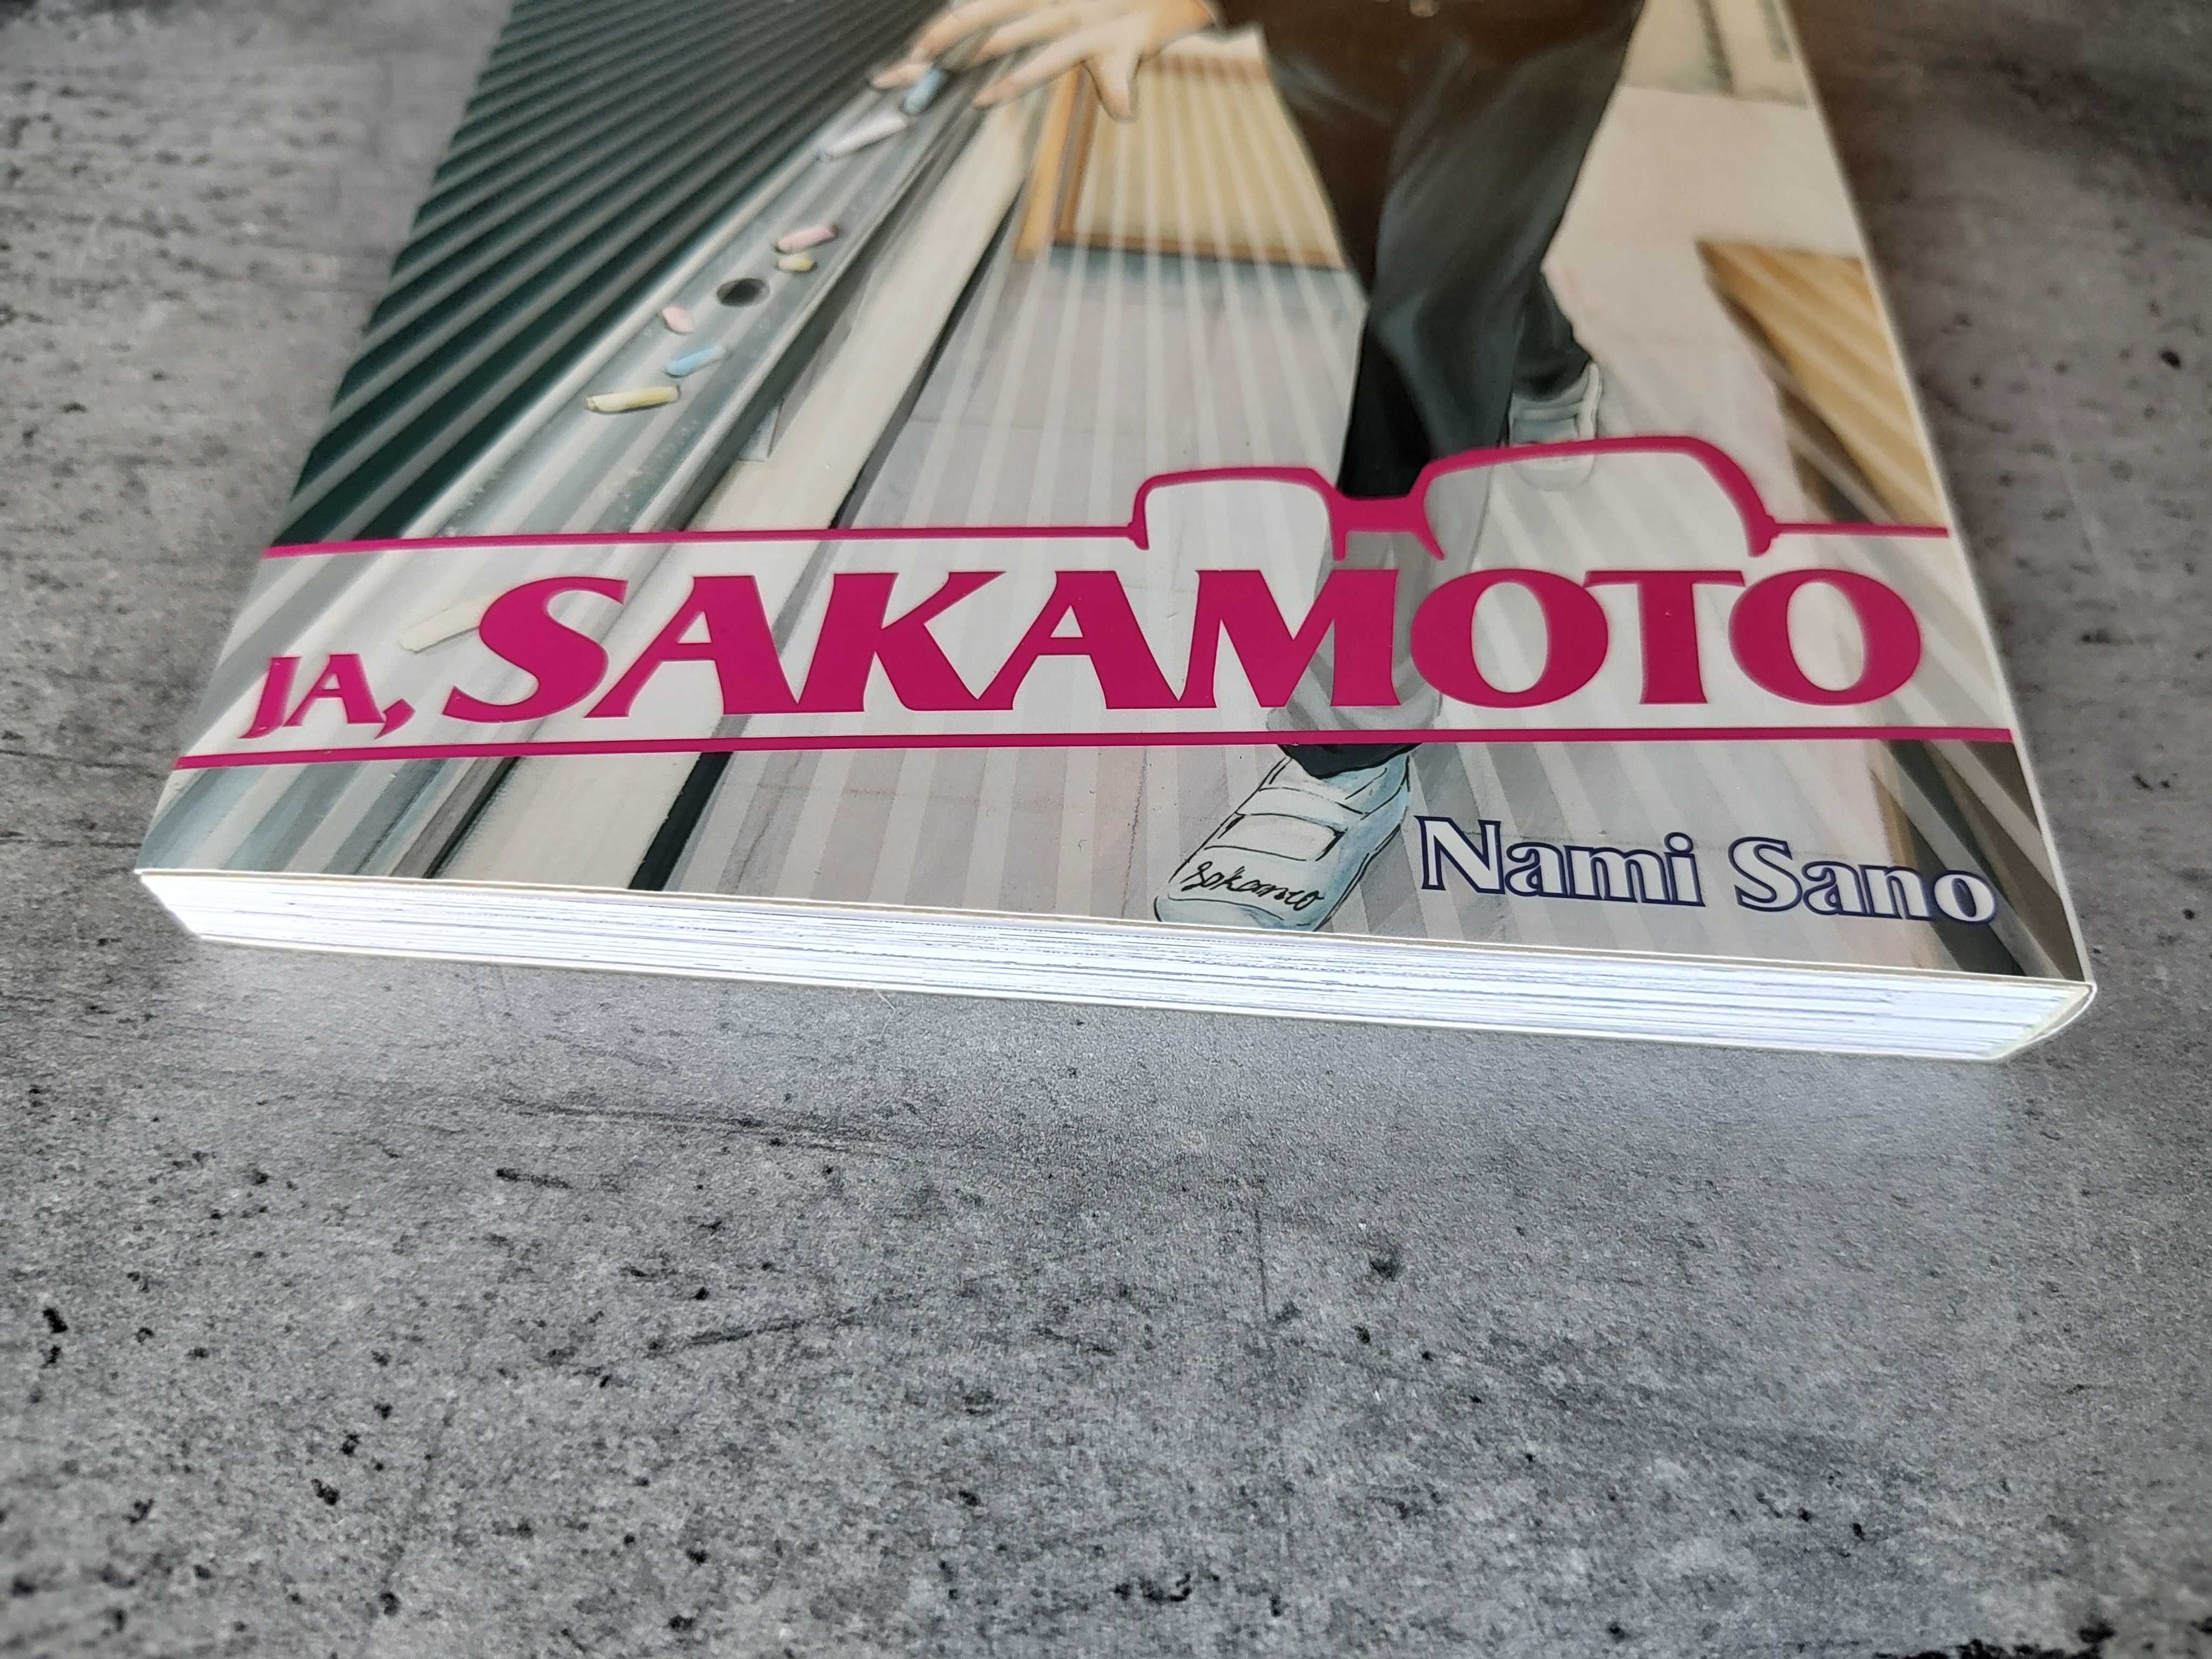 Ja, Sakamoto tom 1 - manga - wydanie polskie